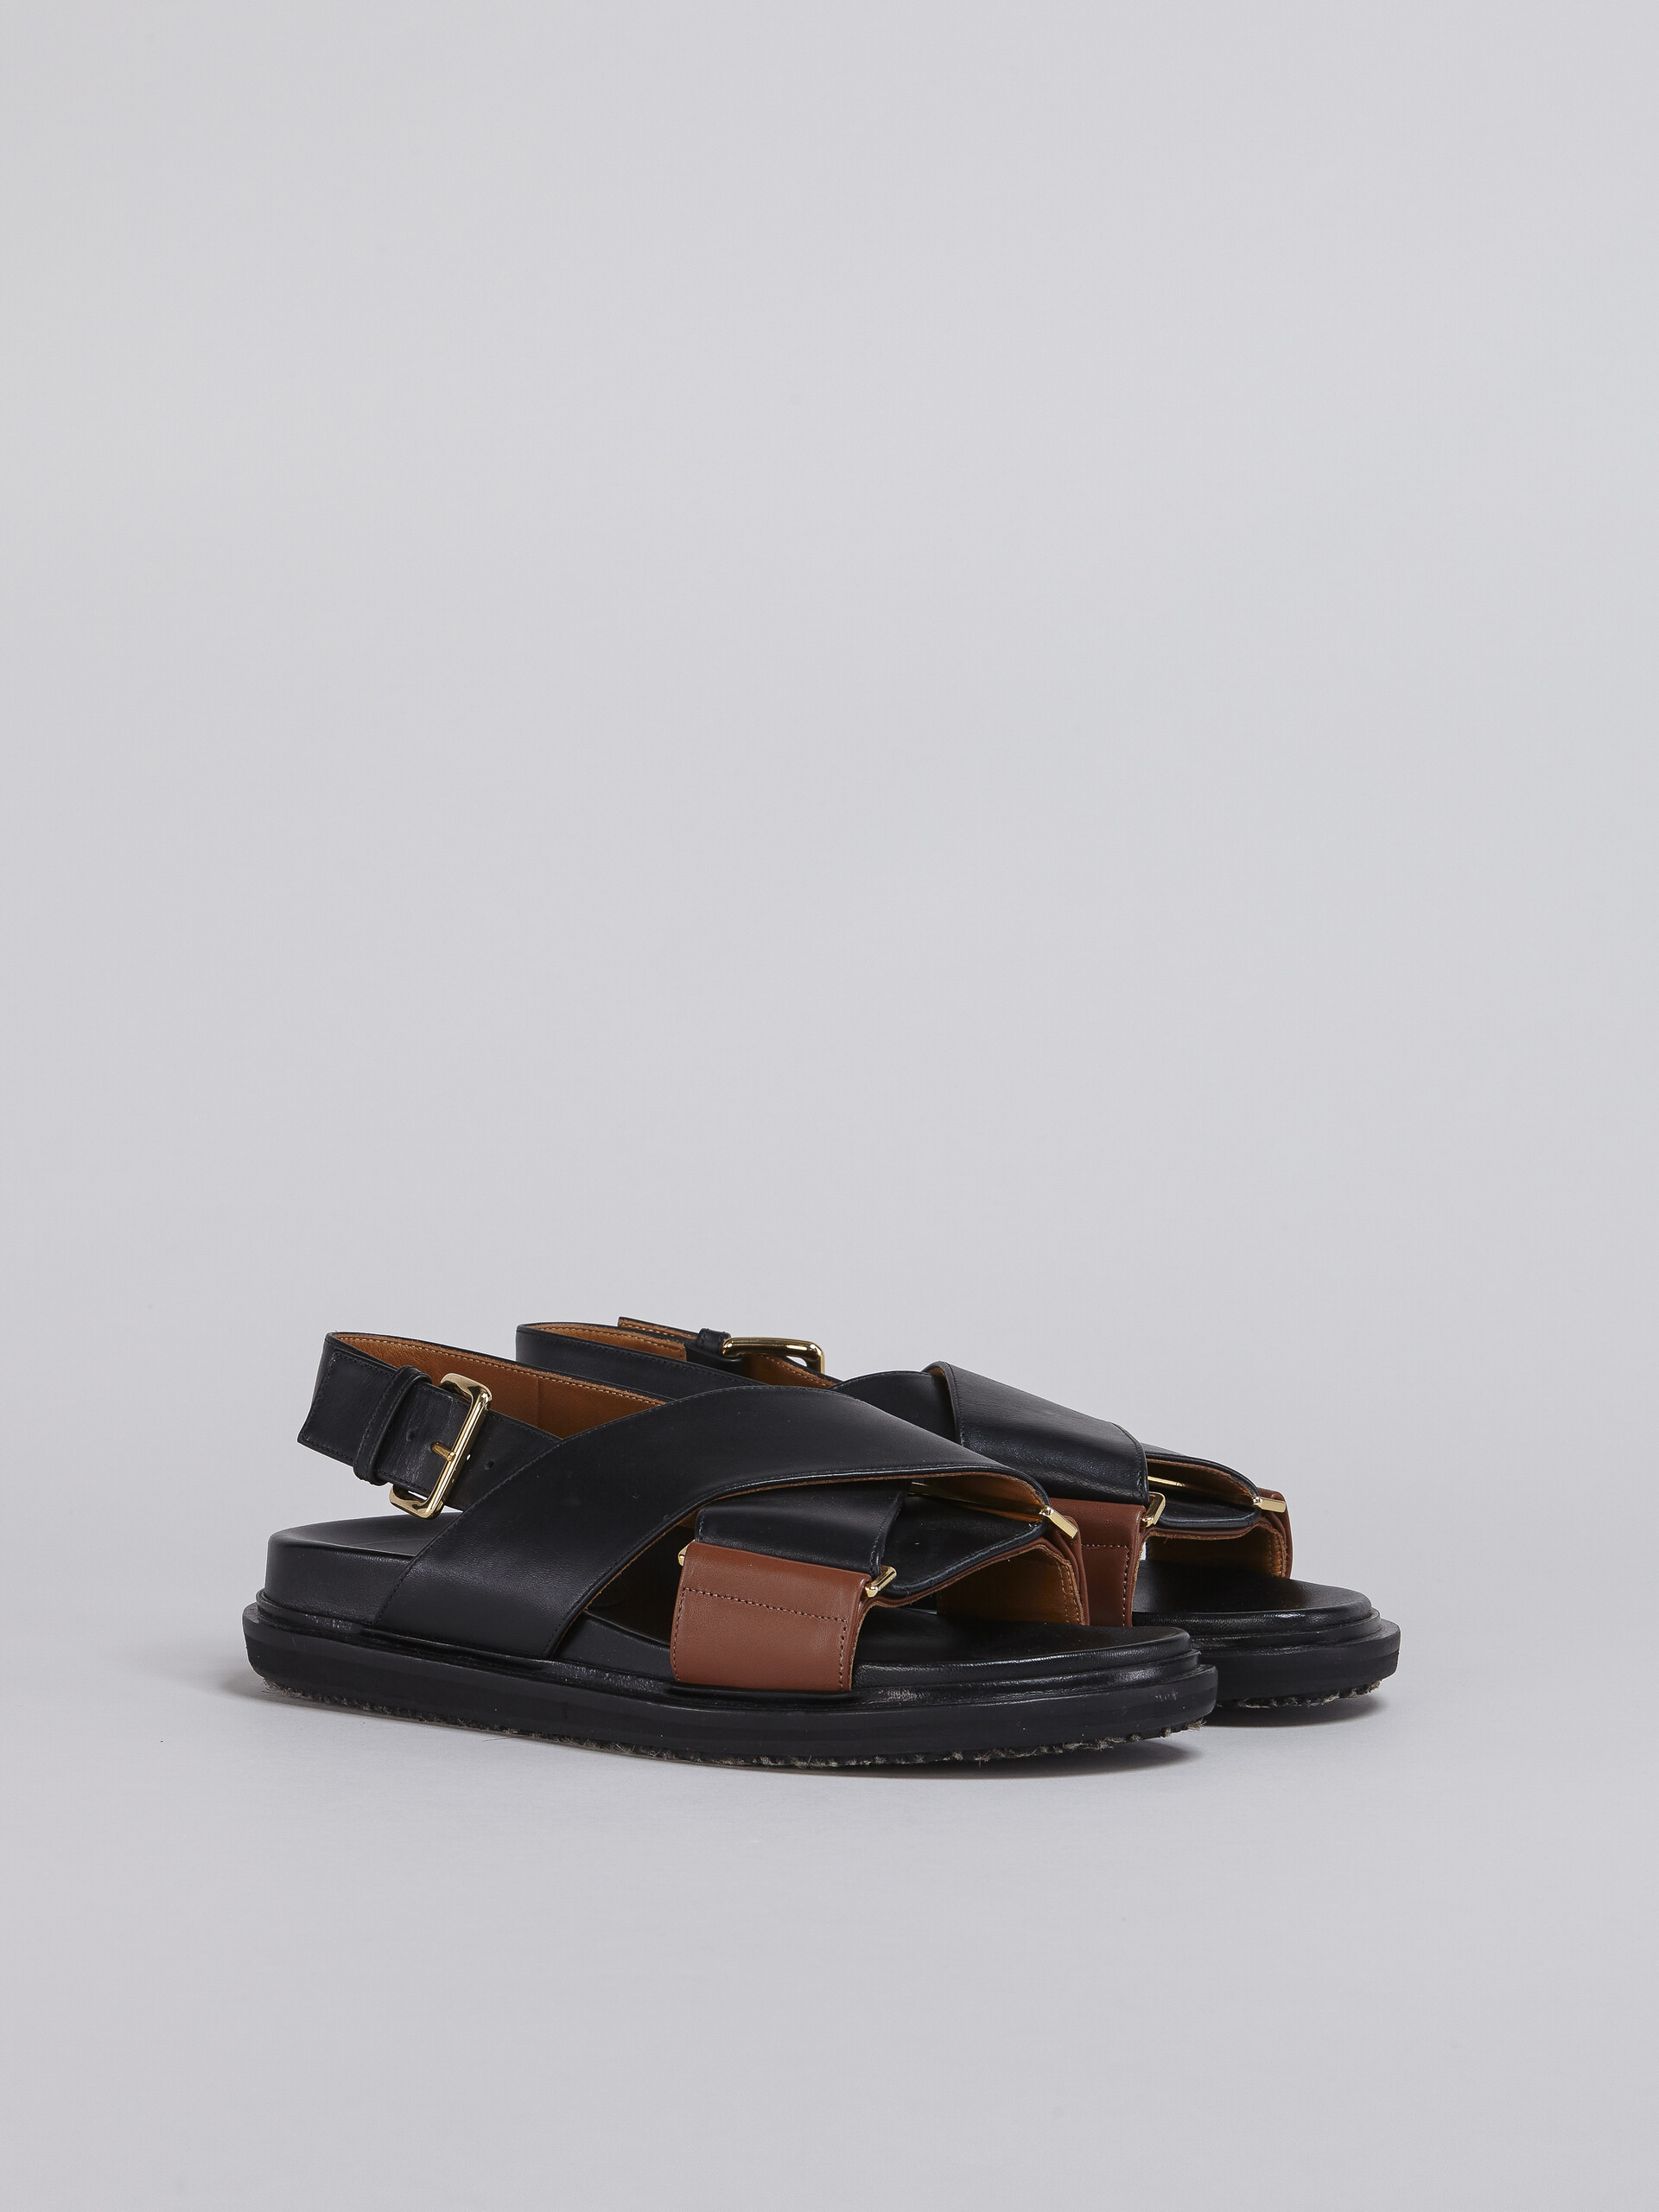 블랙 및 브라운 가죽 퍼스베트 - Sandals - Image 2